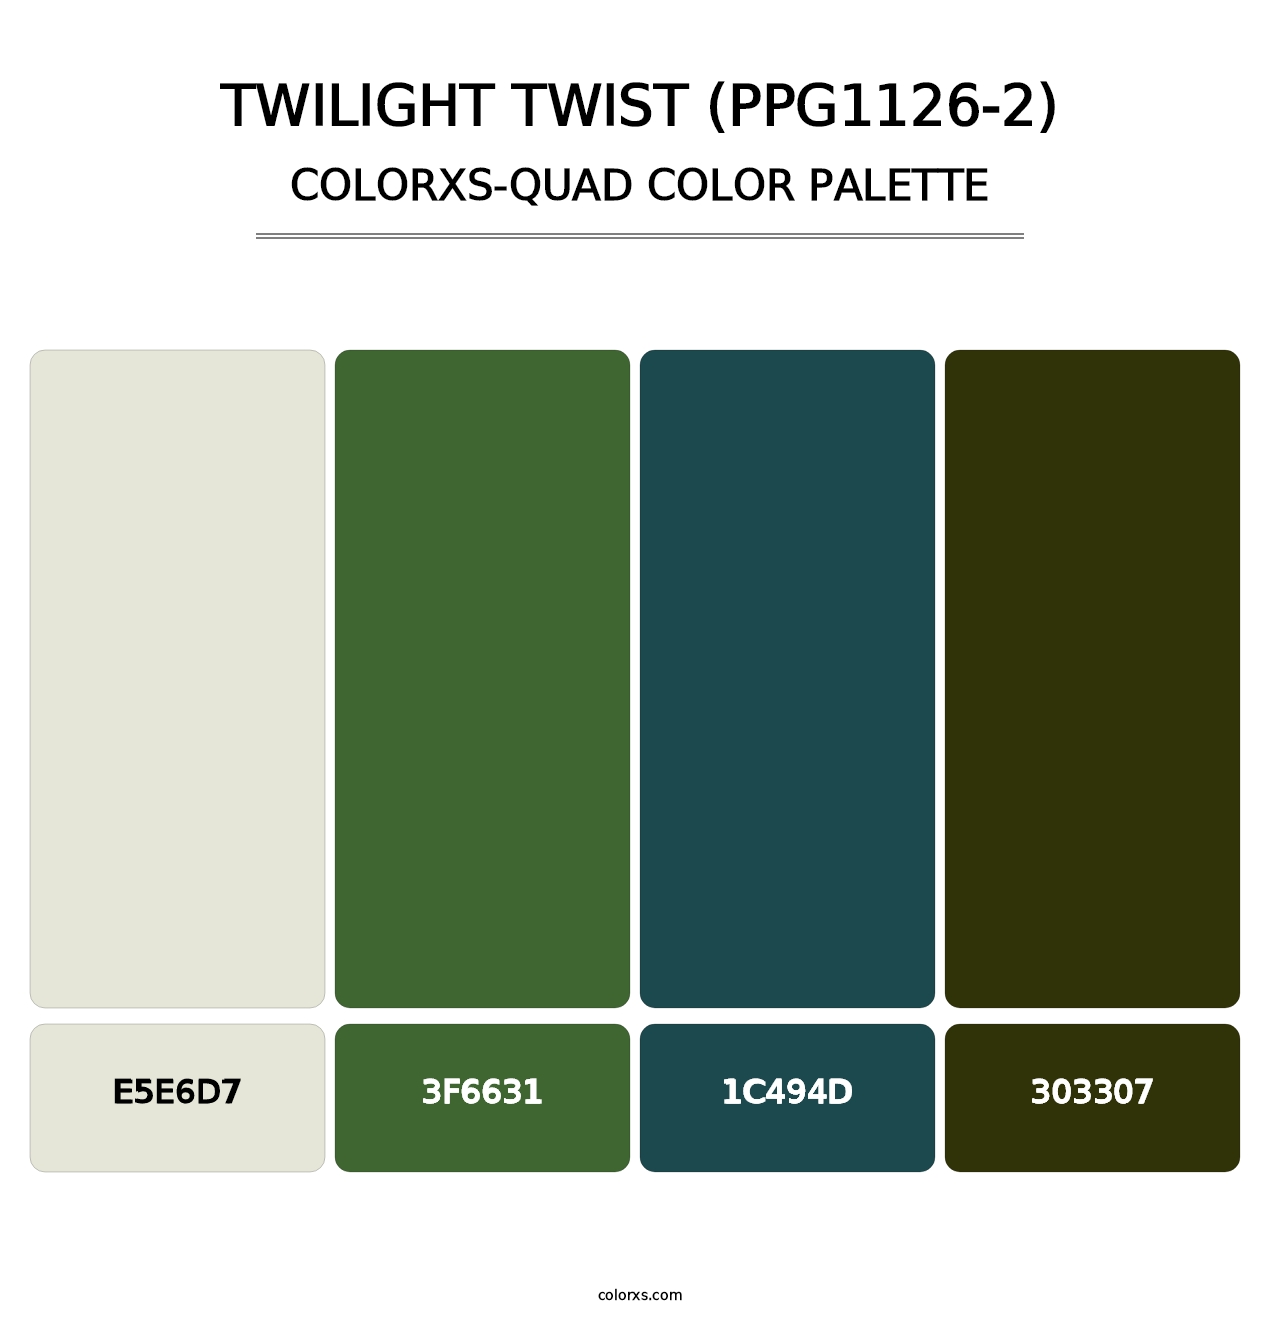 Twilight Twist (PPG1126-2) - Colorxs Quad Palette